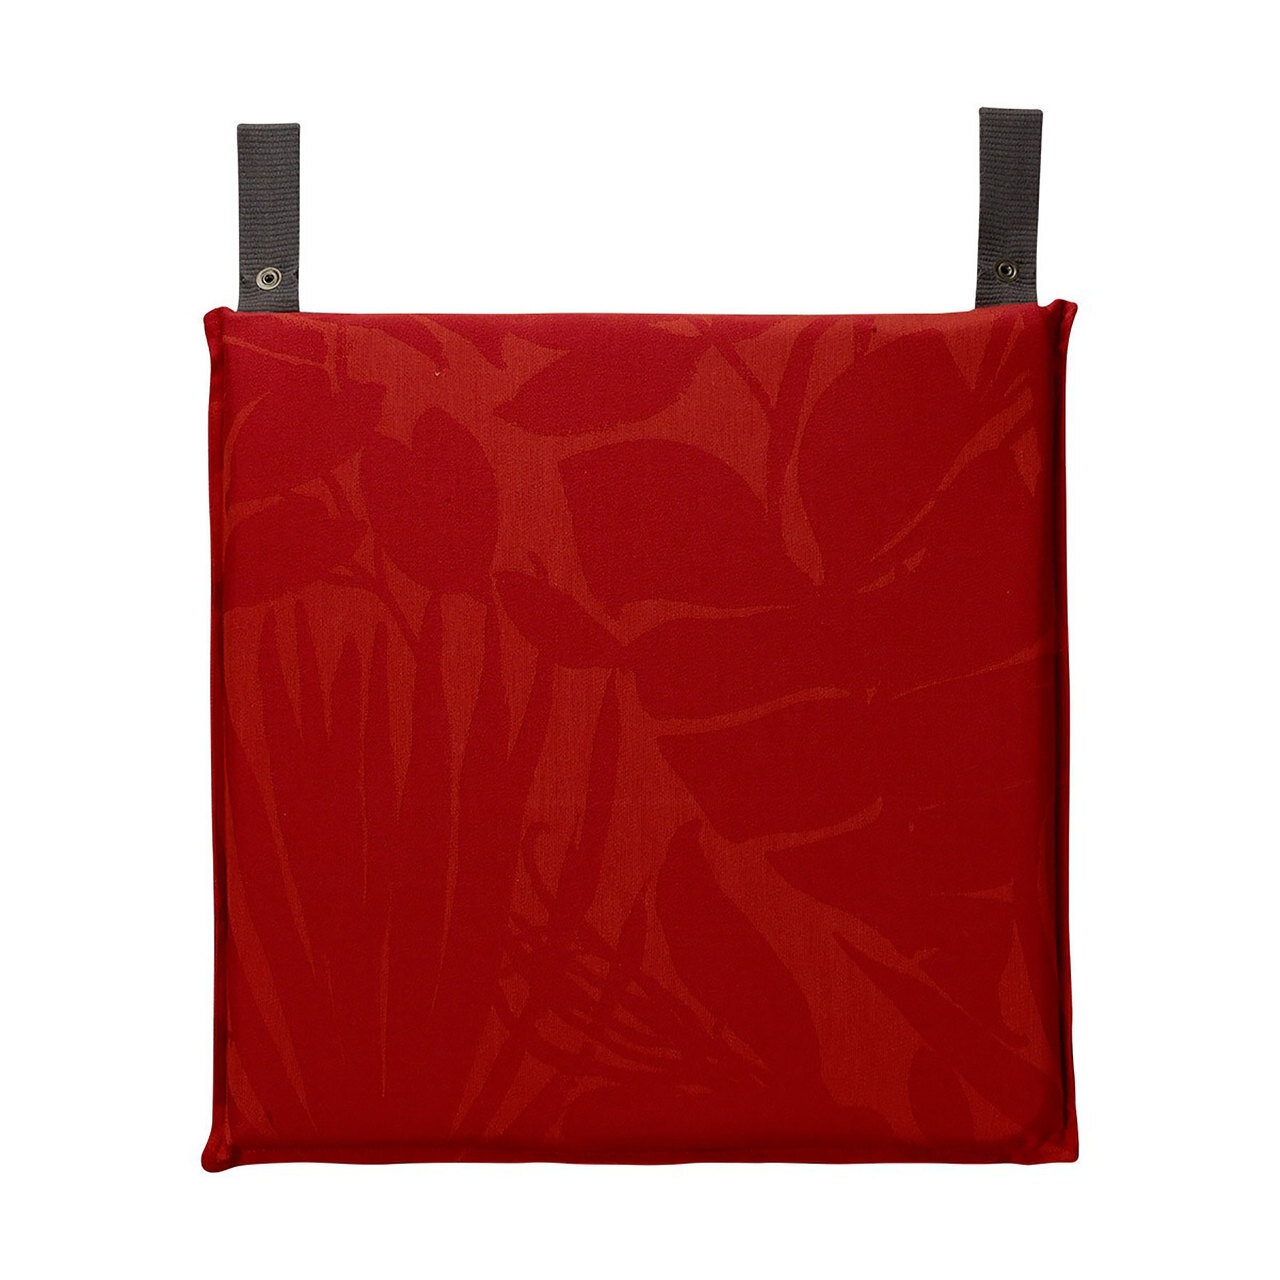 Le Jacquard Bahia Red Chair Cushion 16x16